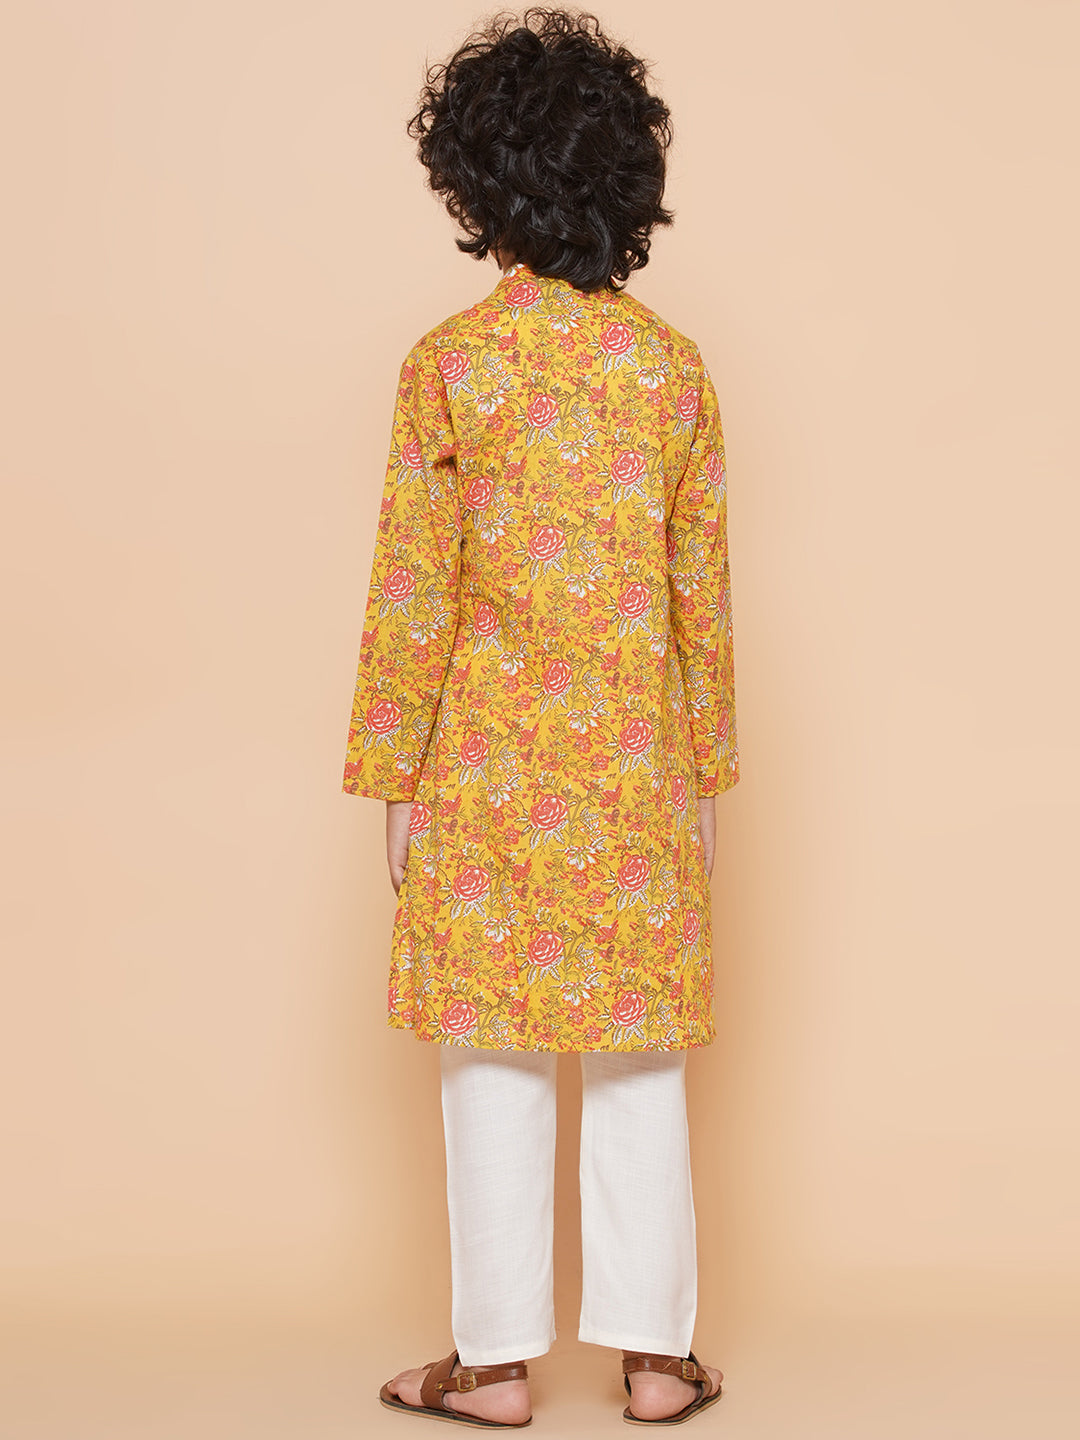 Bittu By Bhama Boys Mustard Yellow Printed Kurta with Pyjamas